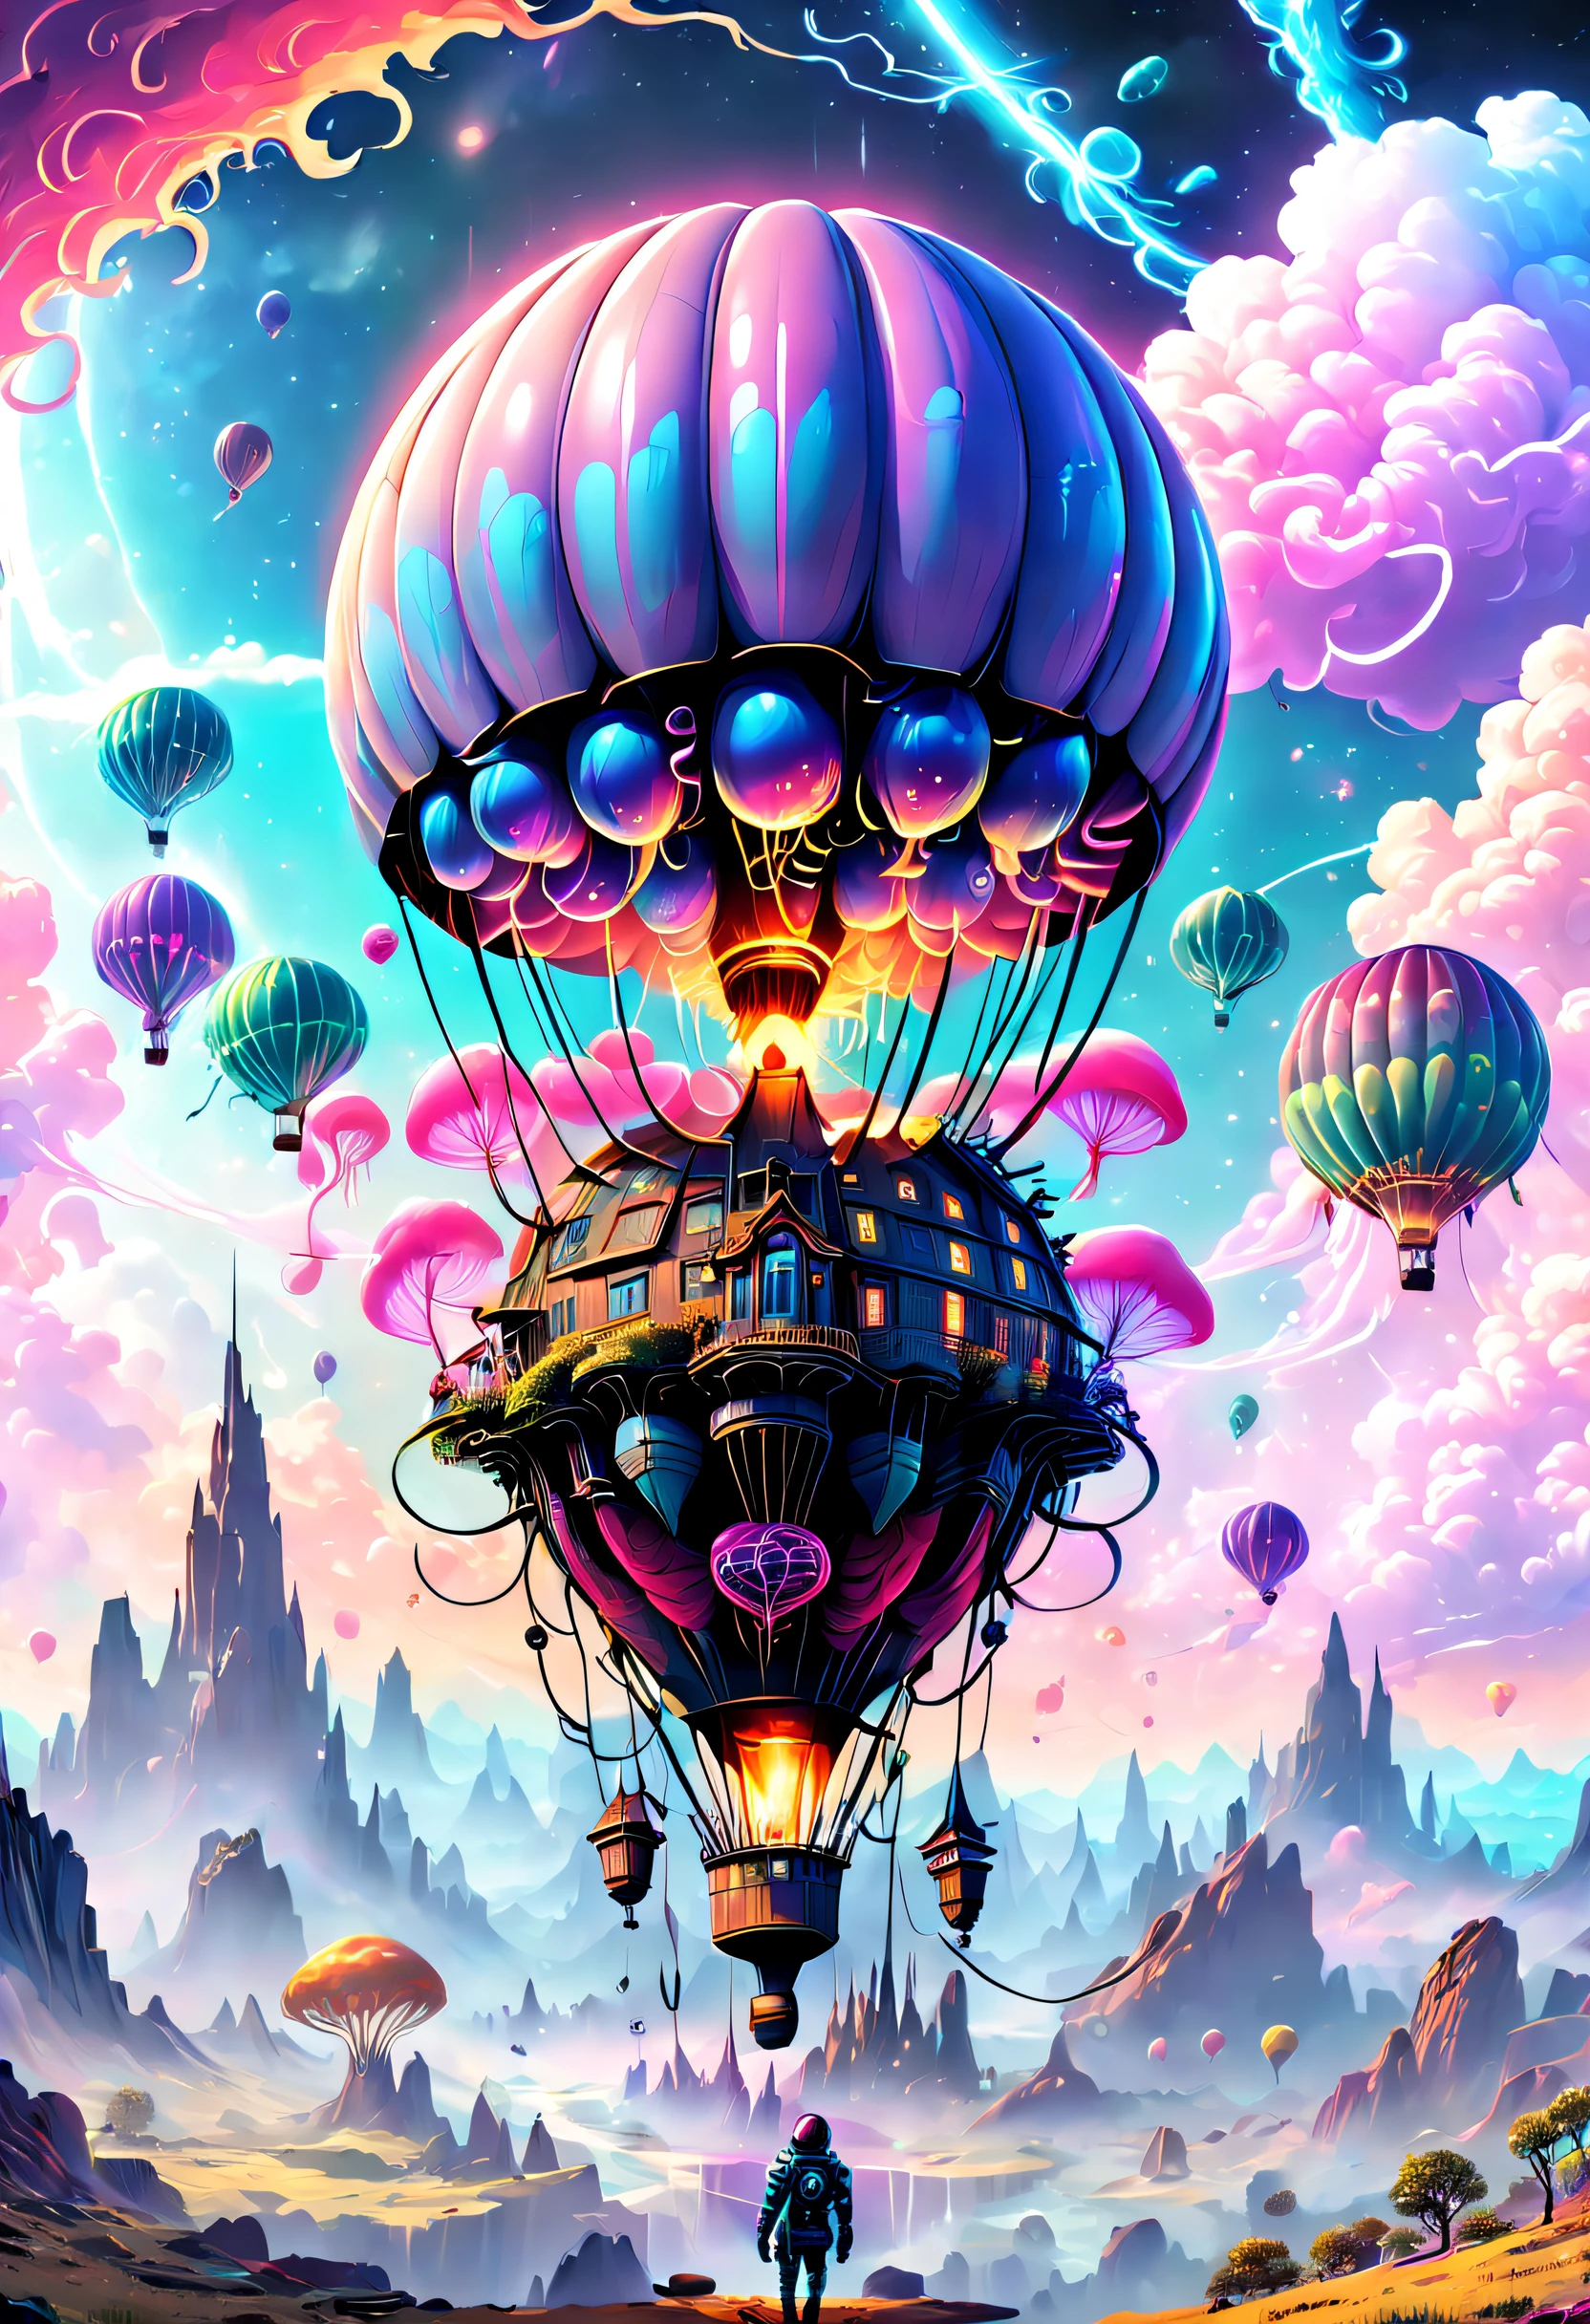 （（杰作，最好的品质）），精美的 8K 超高清专业照片, 清晰聚焦, 在一个令人惊叹的幻想世界中, 未来城市上空的热气球，复古赛博朋克，奇怪的热气球,丰富多彩的,可爱水母形状的热气球，在云里,美丽的天空,超现实主义,史诗般的梦想,童话世界,插图,高质量,3D 渲染,极其详细,真实感,鲜艳的色彩,令人惊叹的灯光，解剖正确，星际穿越，无尽空间，透明的，景深 精美空间图像场景，史诗般的未来科幻小说，8K 精细数字艺术, arstation 和 beeple 高度, 保罗·莱尔和 beeple, 惊人的壁纸, 类似 Beeple 的风格, epic fantasy sci fi 插图, 8k 高品质细节艺术, 丰富多彩的概念艺术, 奇幻绘景，可爱的, 详细的幻想数字艺术, 创辉数字幻想艺术, 4k 高度详细的数字艺术, 详细的数字 2D 幻想艺术, 超现实主义概念艺术, Beeple 和 Jeremiah Ketner, 异想天开的幻想风景艺术, 幻想城市景观